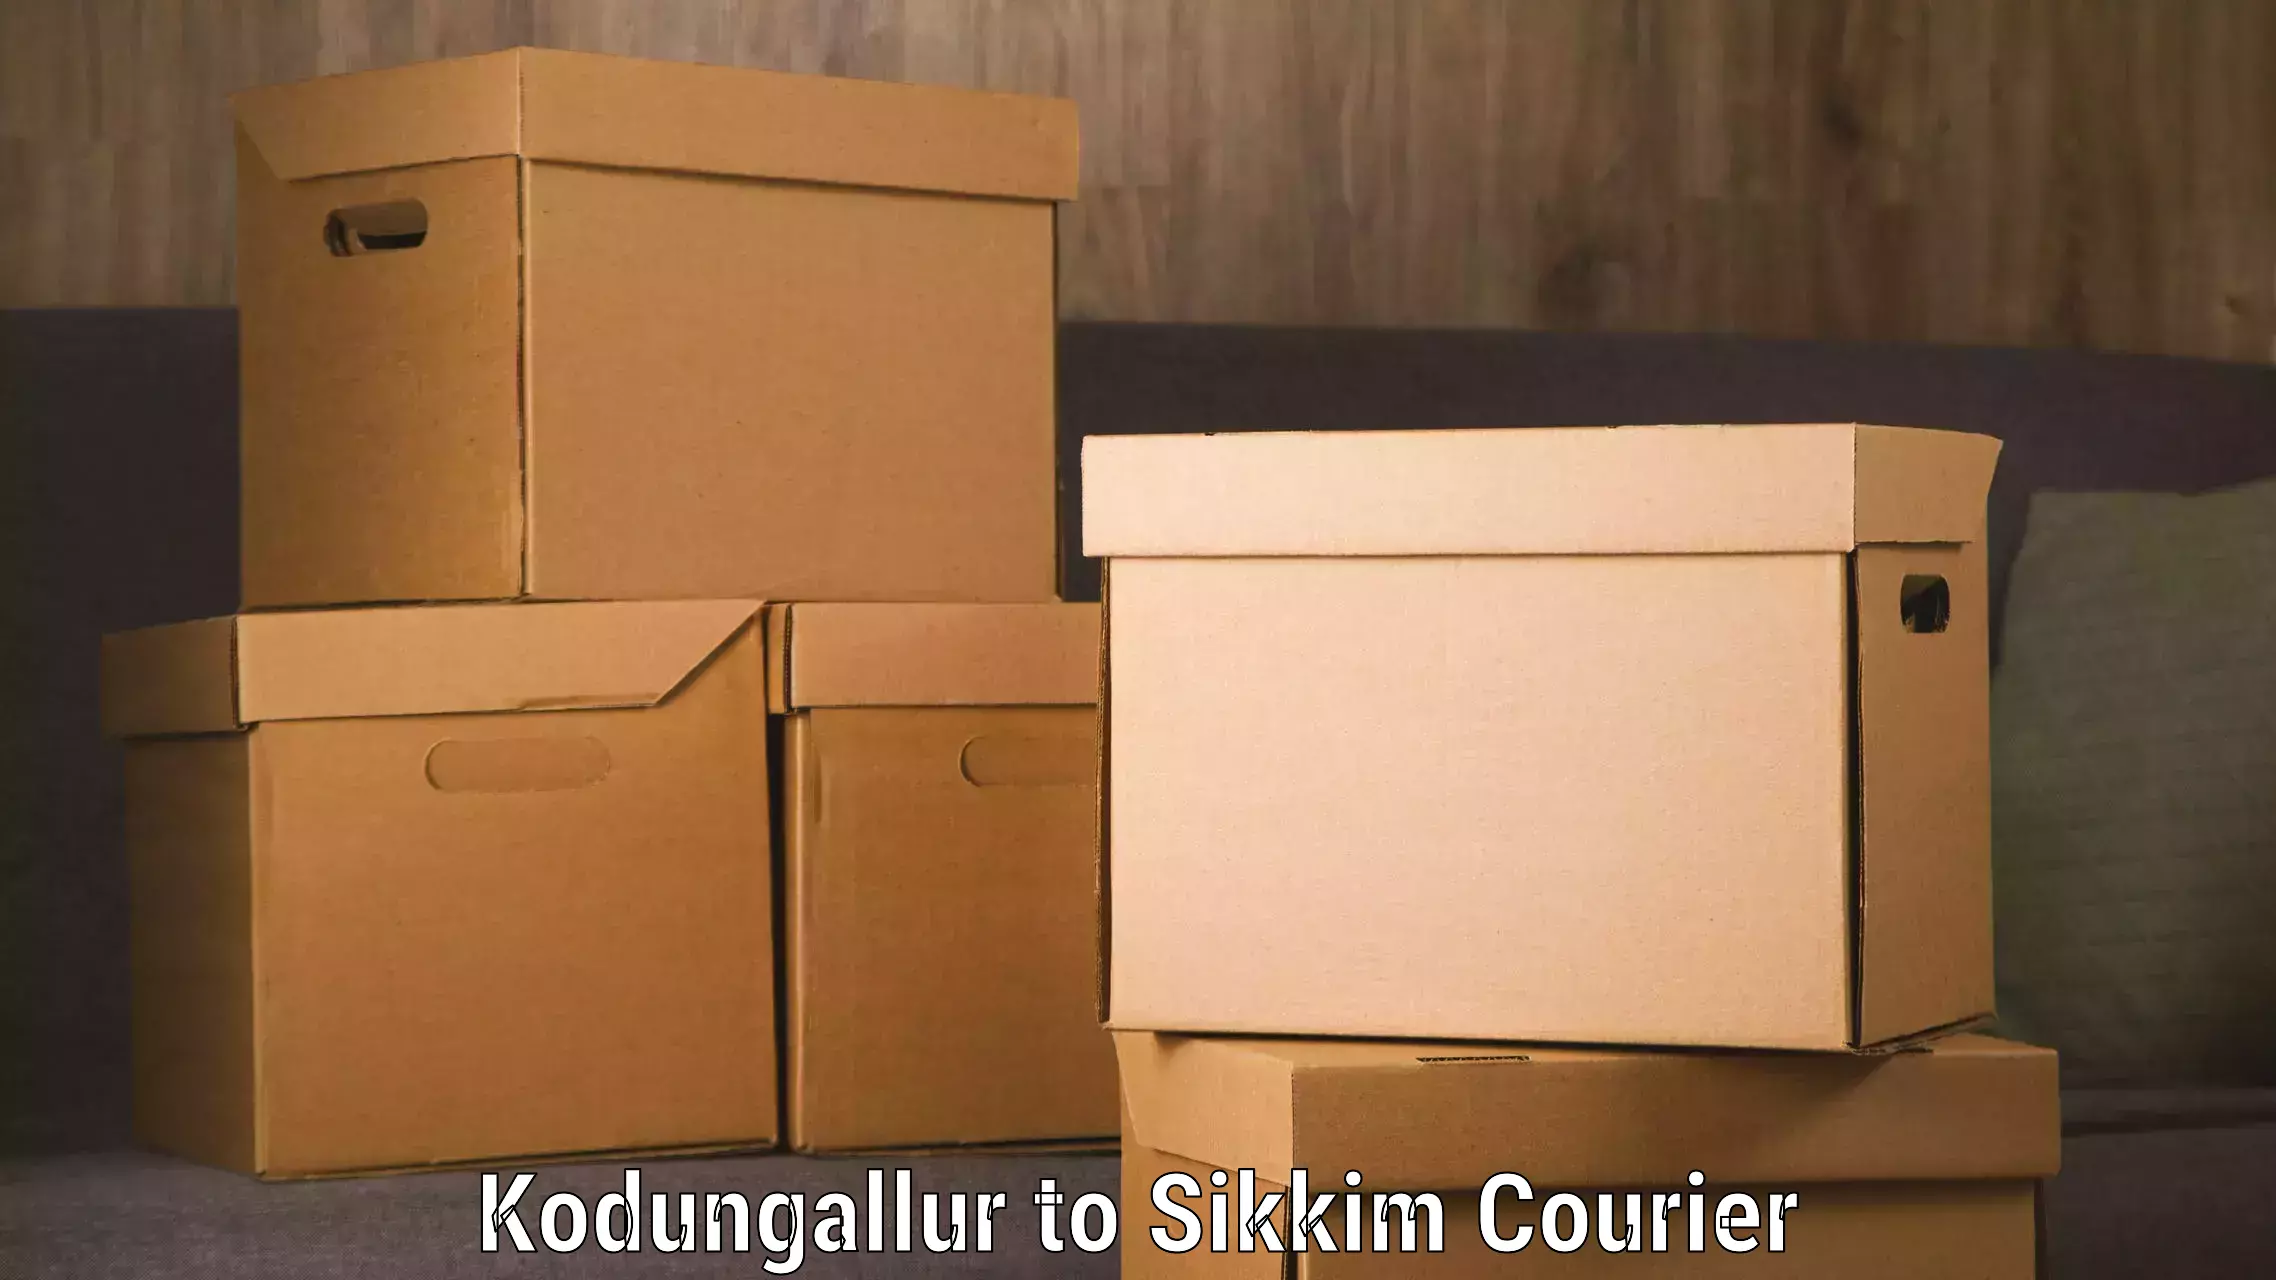 Efficient parcel service Kodungallur to Pelling